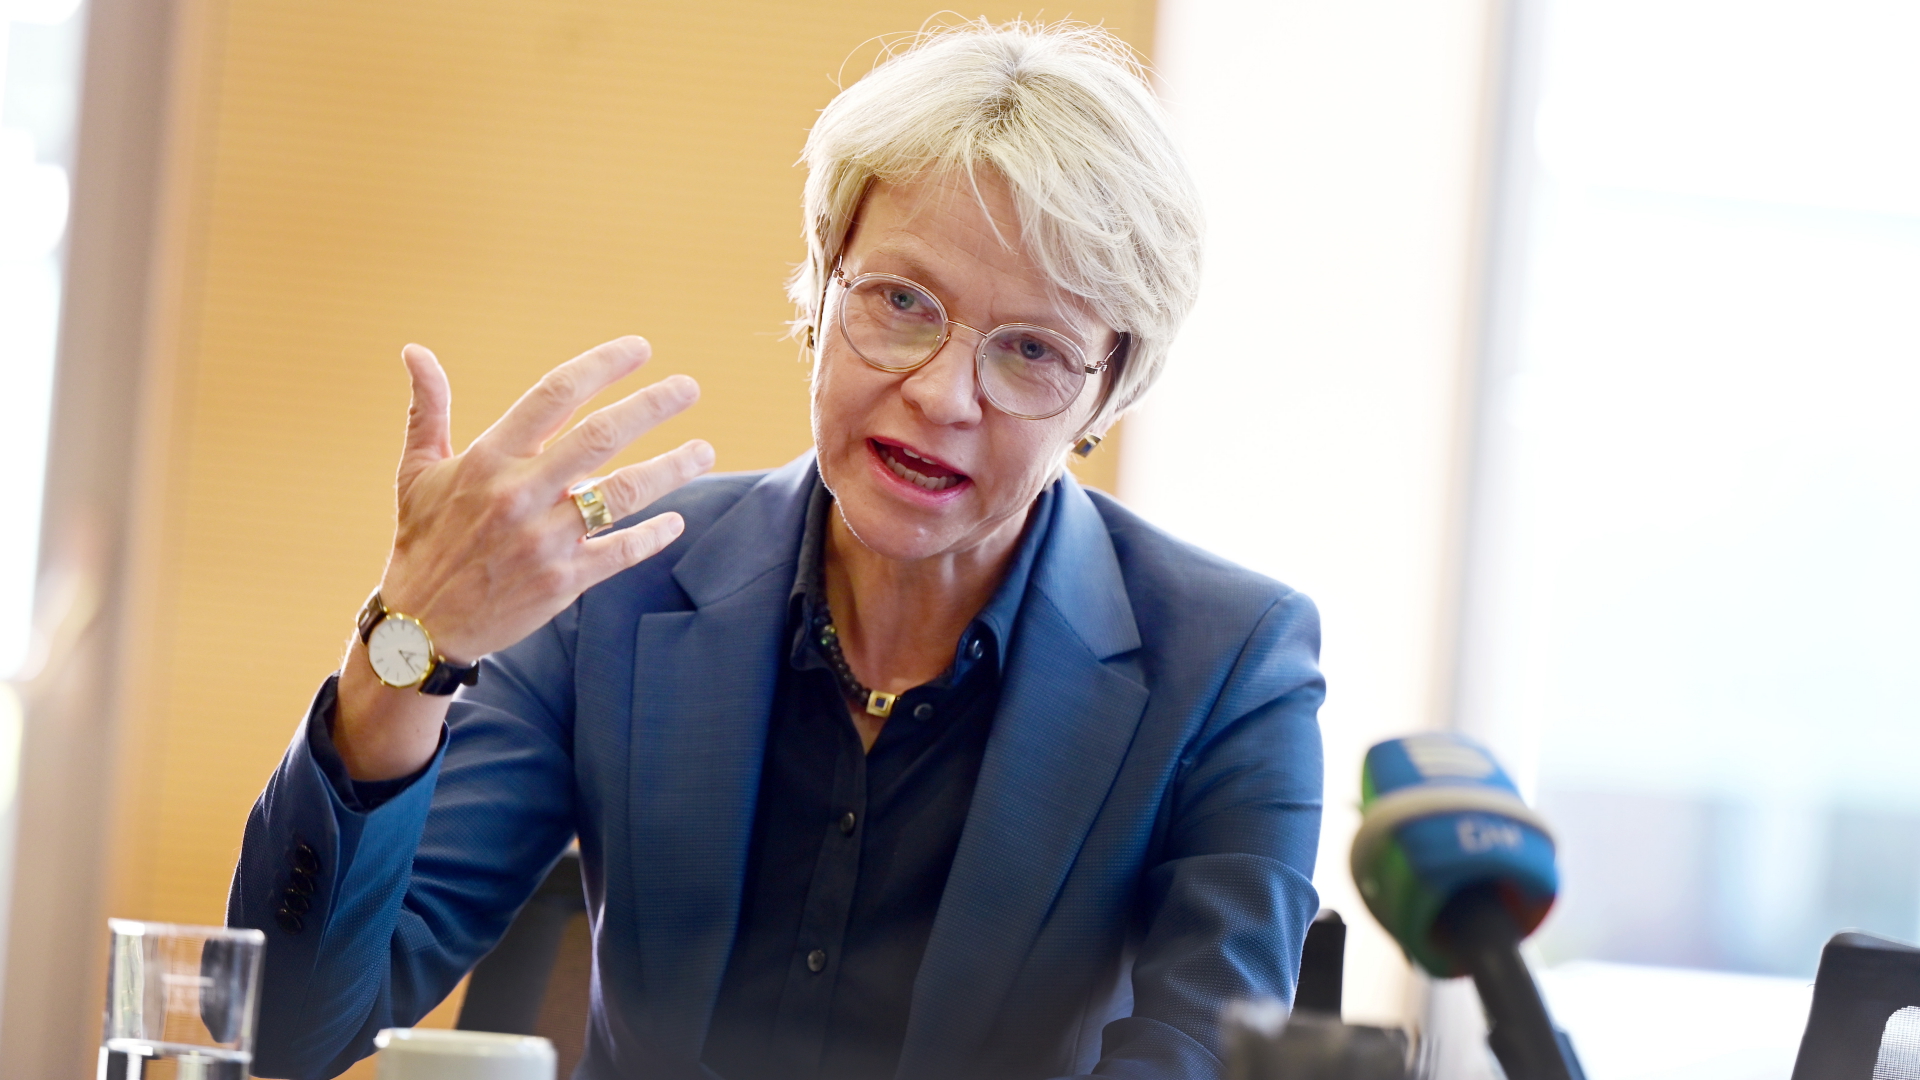 NRW-Schulministerin entschuldigt sich für verschobene Abiprüfungen